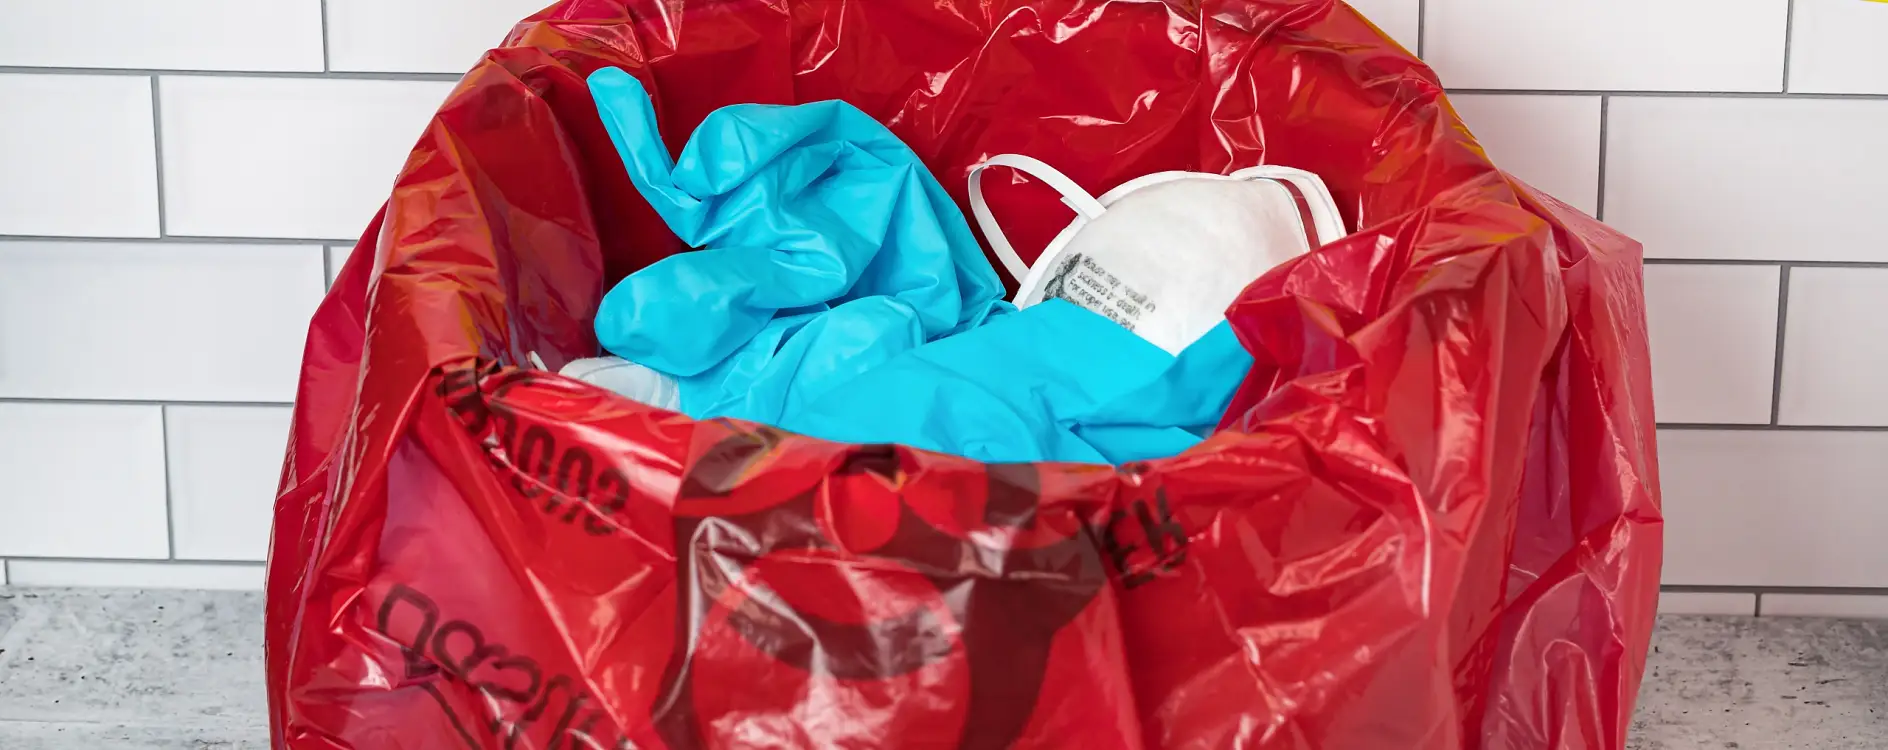 Selar com segurança sacos de resíduos contaminados